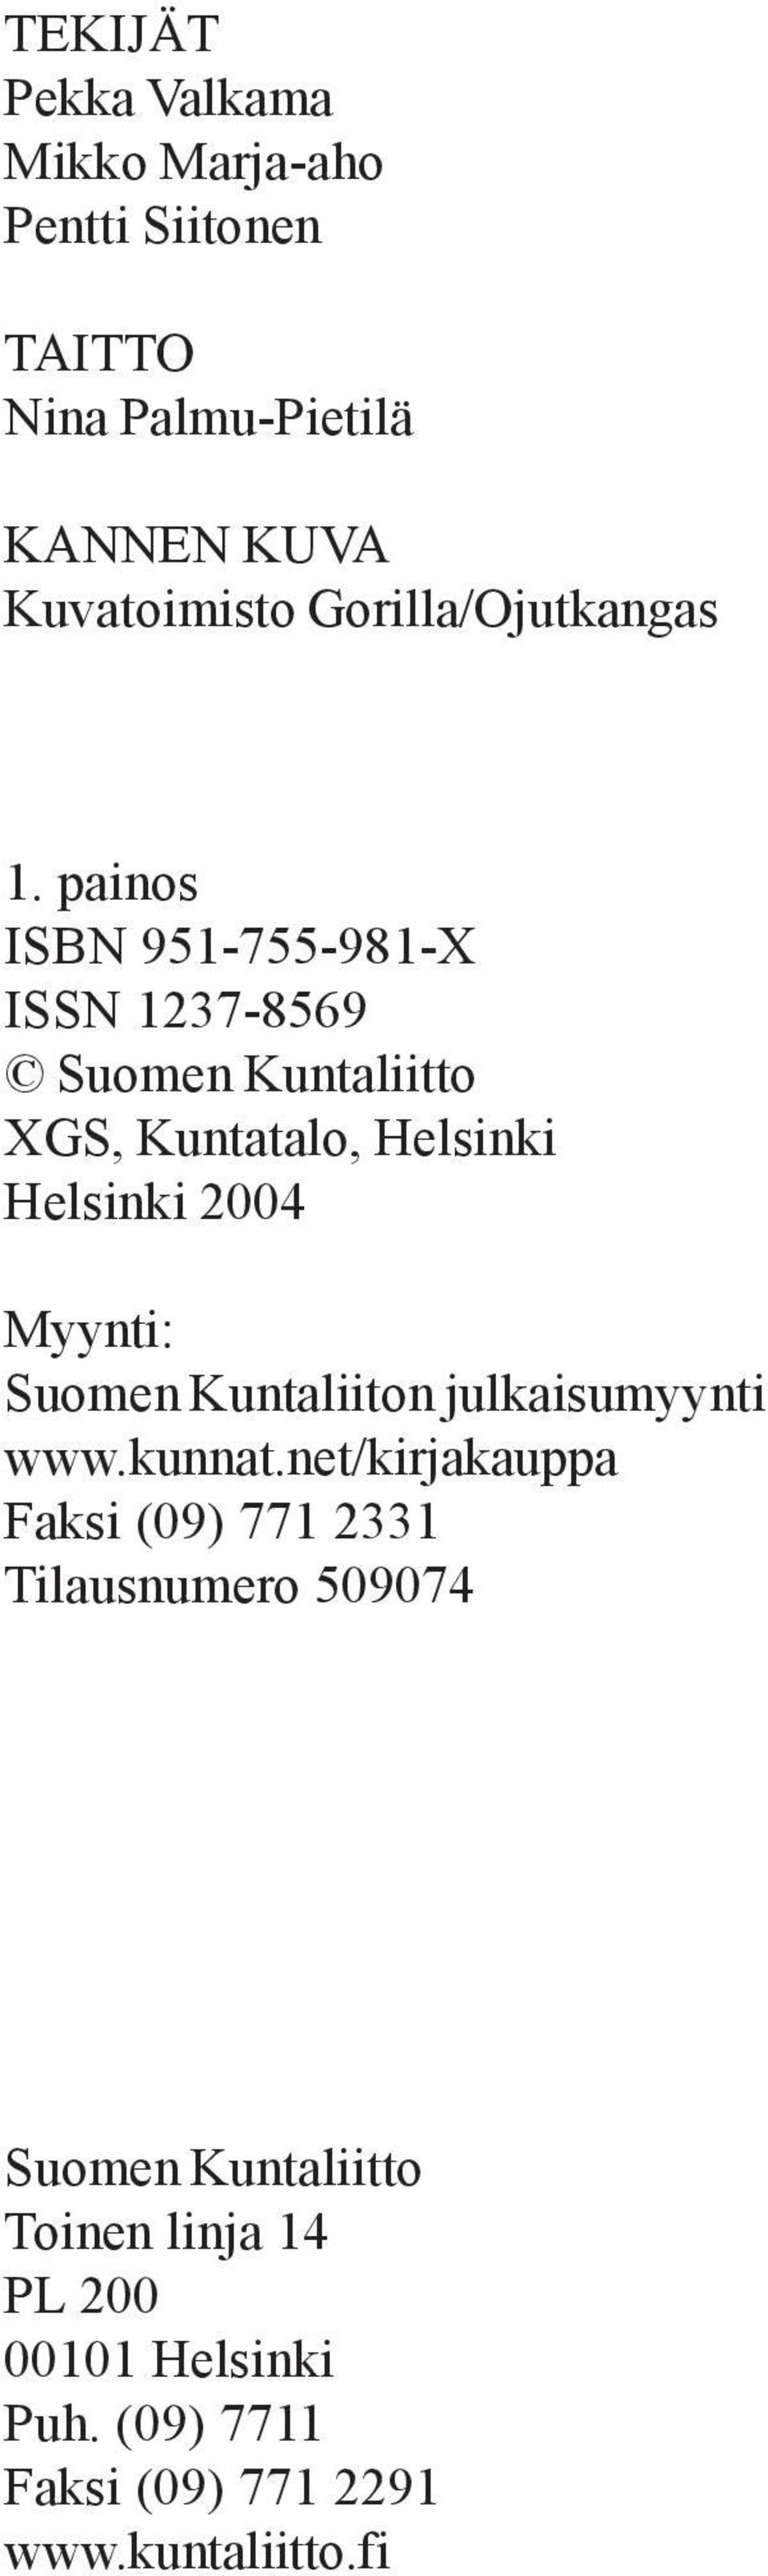 painos ISBN 951-755-981-X ISSN 1237-8569 Suomen Kuntaliitto XGS, Kuntatalo, Helsinki Helsinki 2004 Myynti: